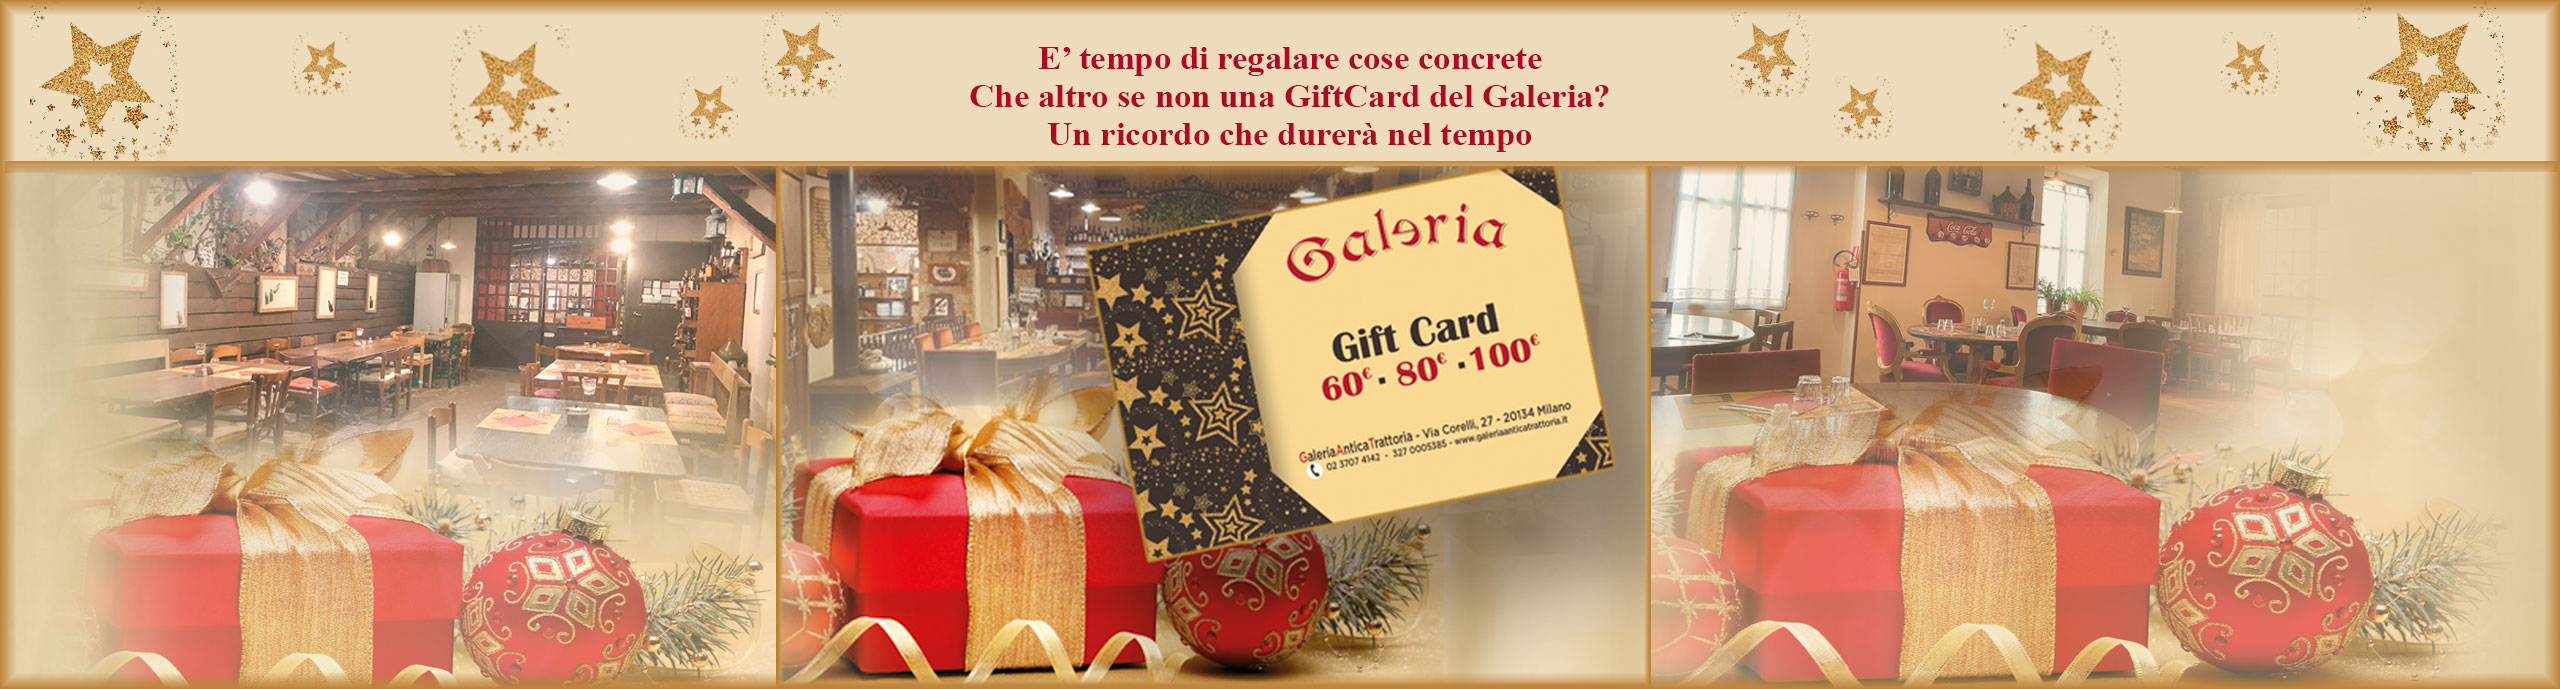 Galerias-GiftCard